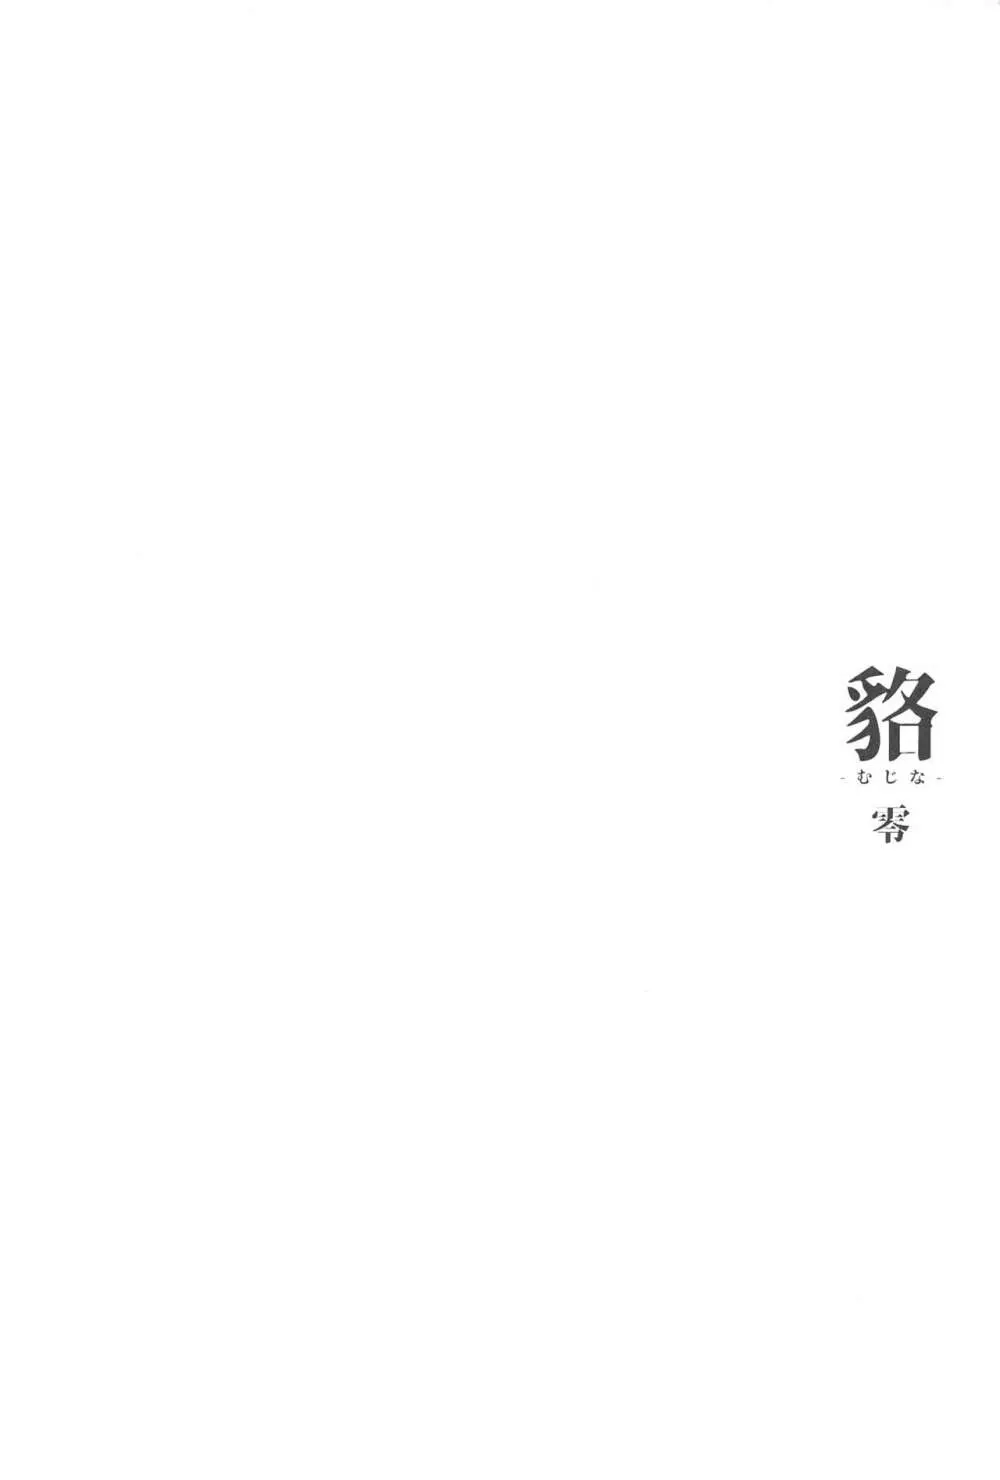 [怪奇日蝕 (綾野なおと)] 貉-むじな-零 [2019年5月25日] - page3